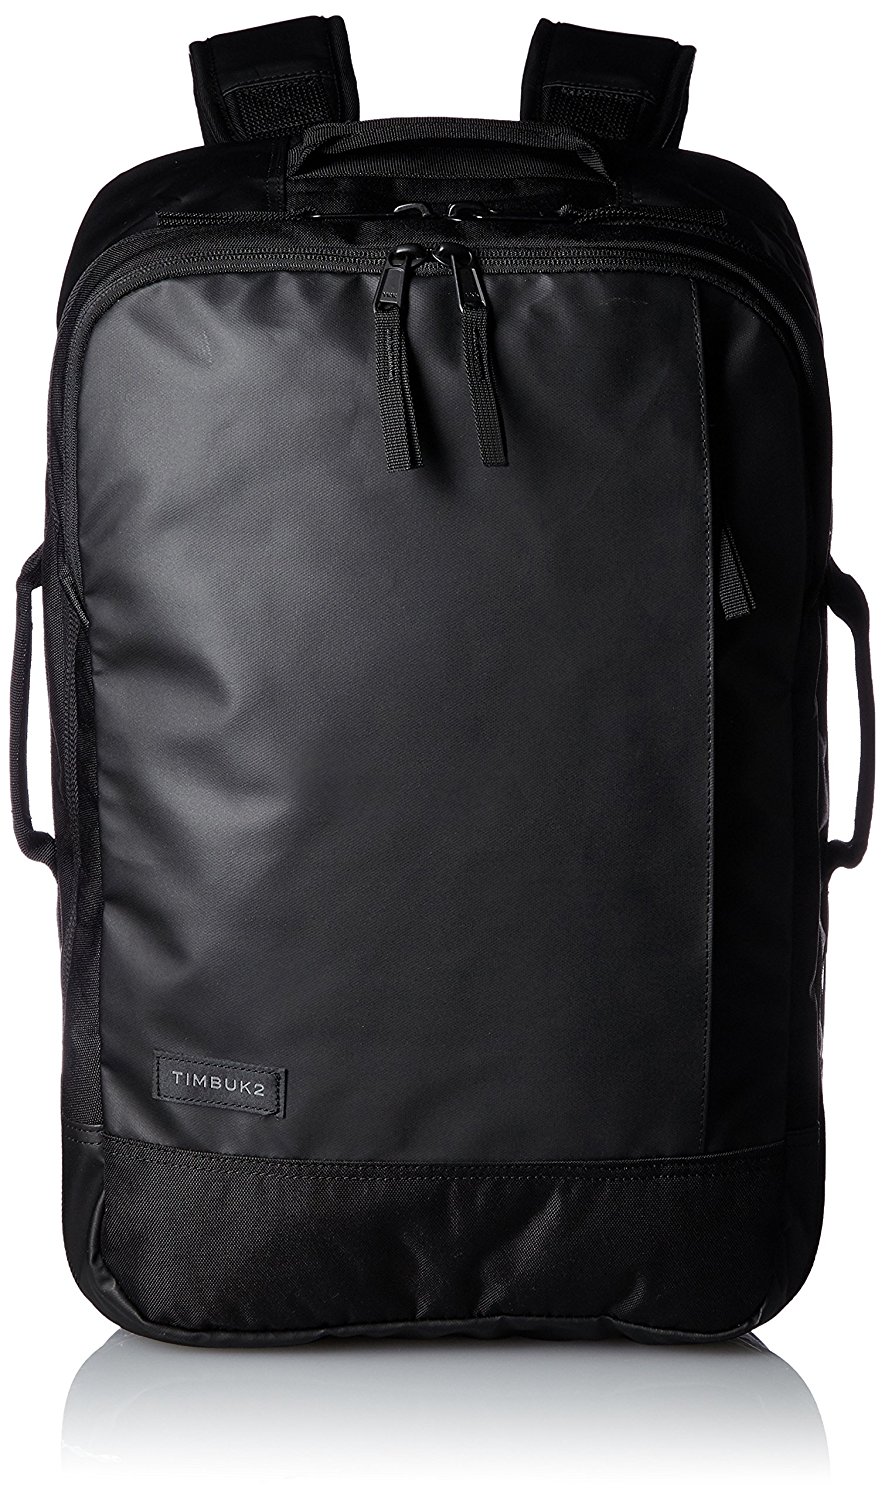 timbuk2 backpack shutterbean